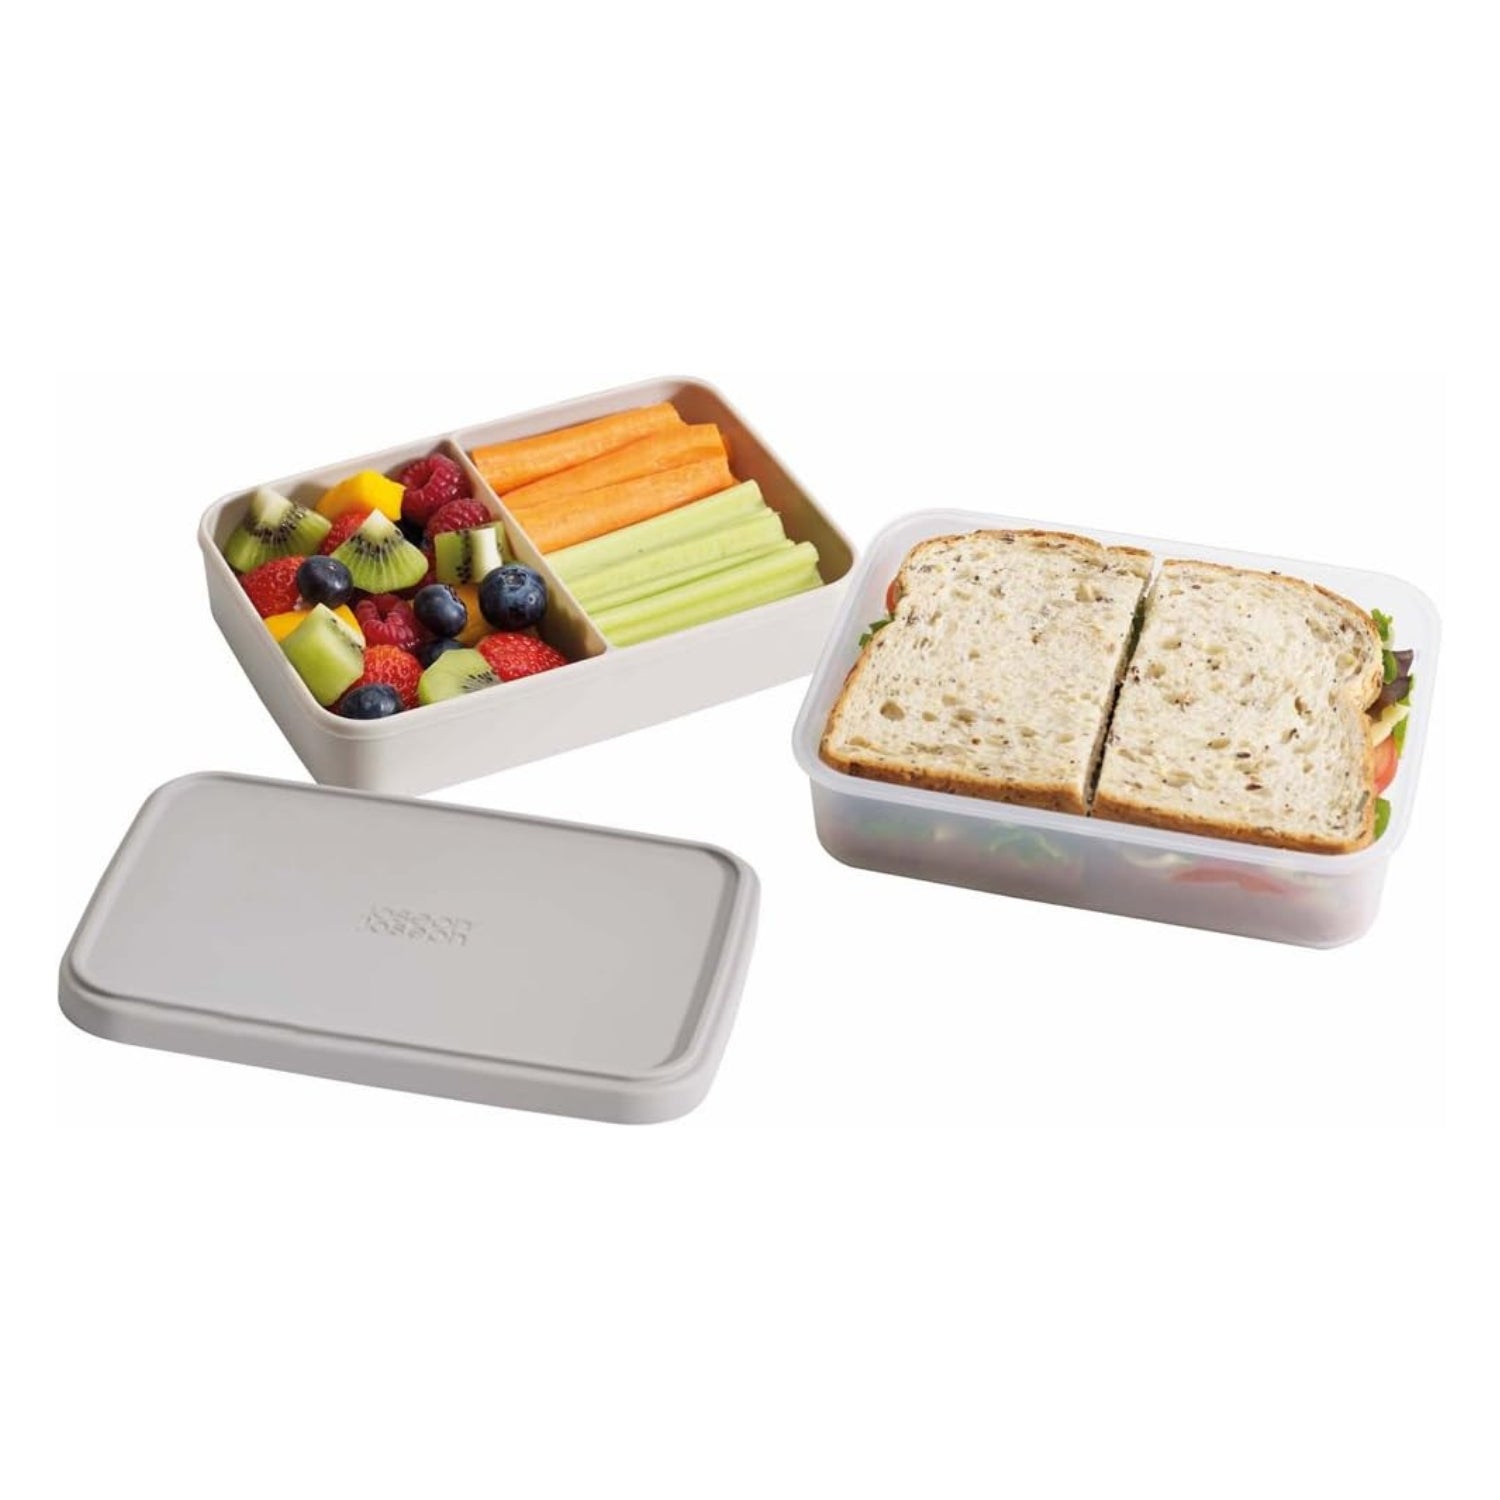 Joseph Joseph "Go Eat" Lunch Box, Plastica, Colore Grigio